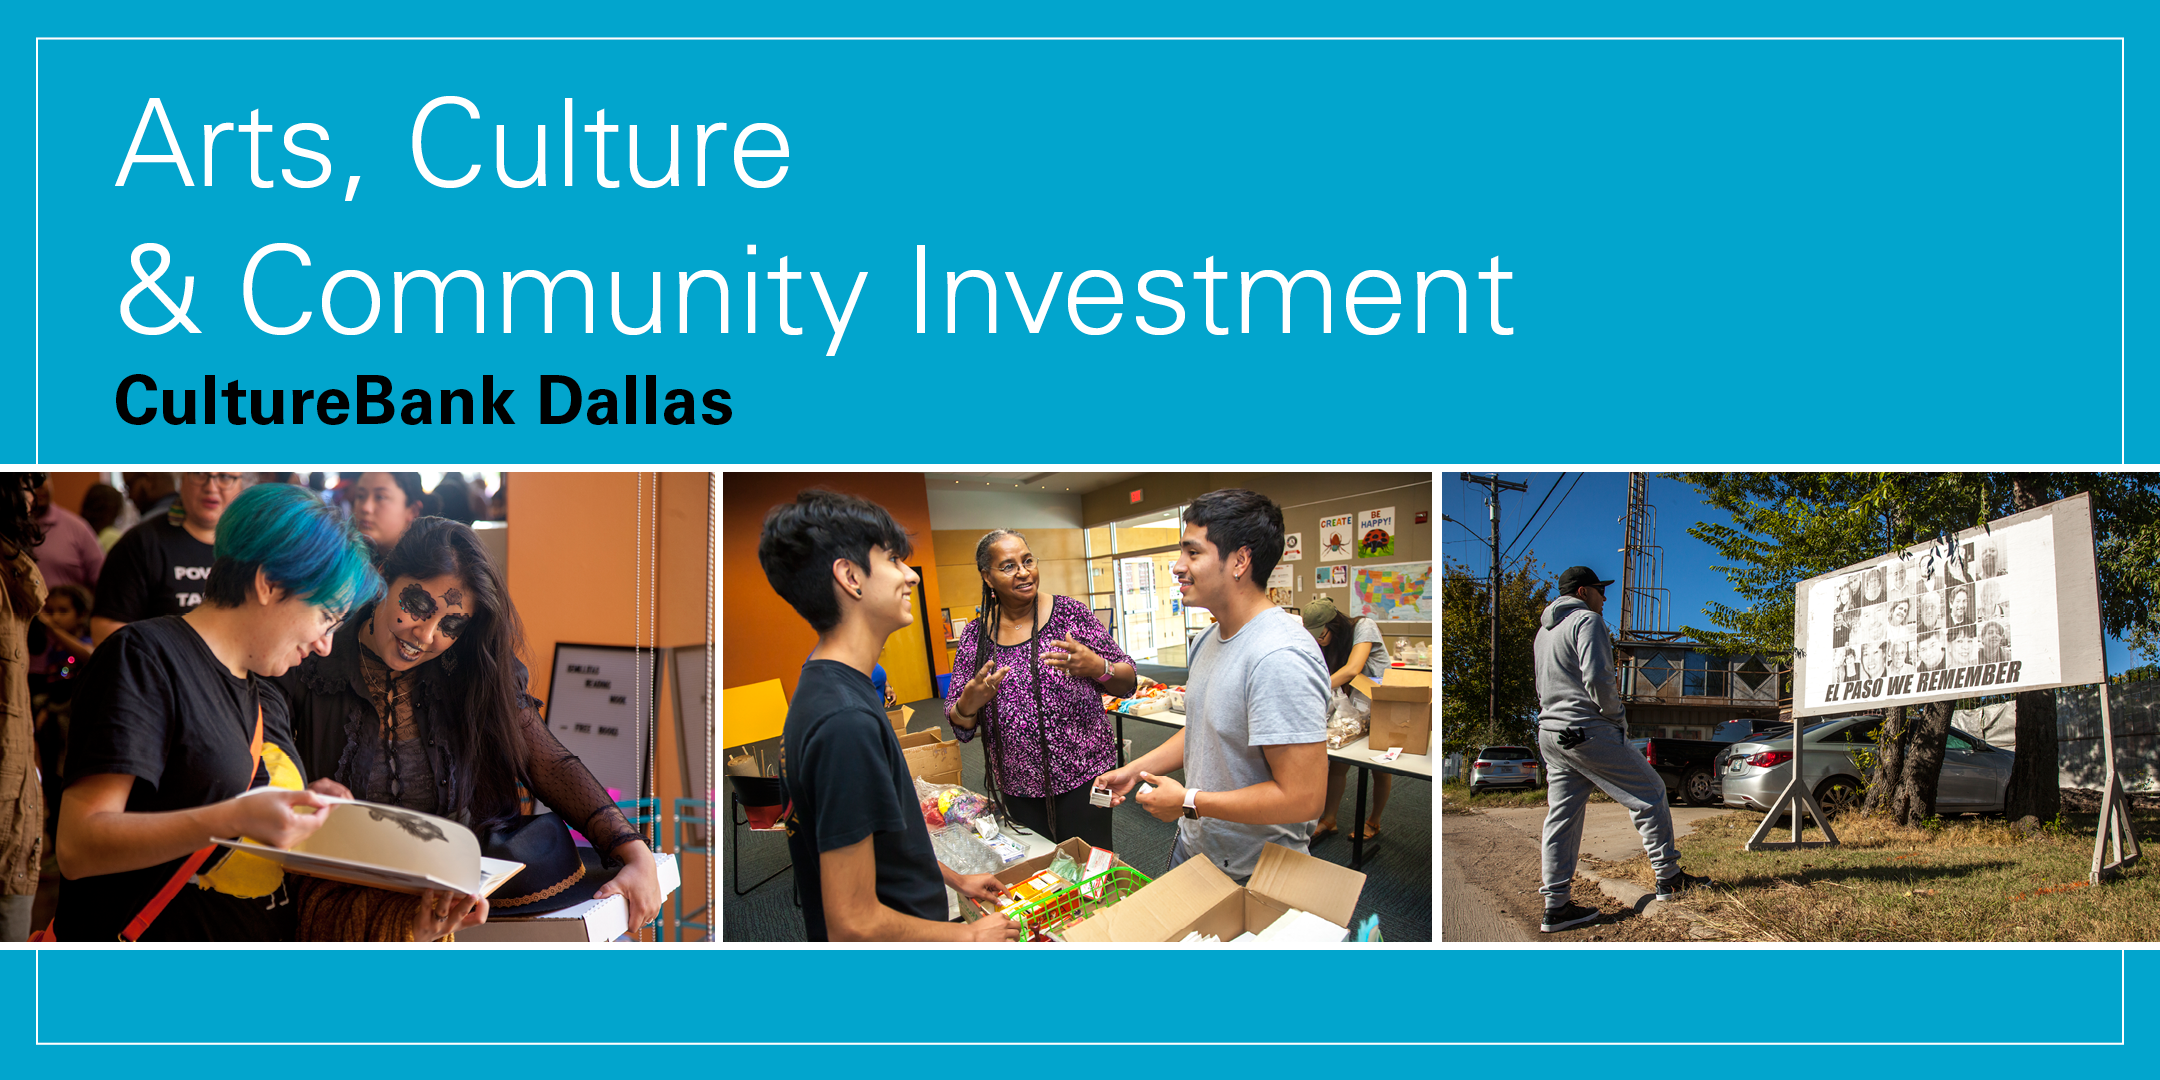 Arts, Culture & Community Investment - CultureBank Dallas.